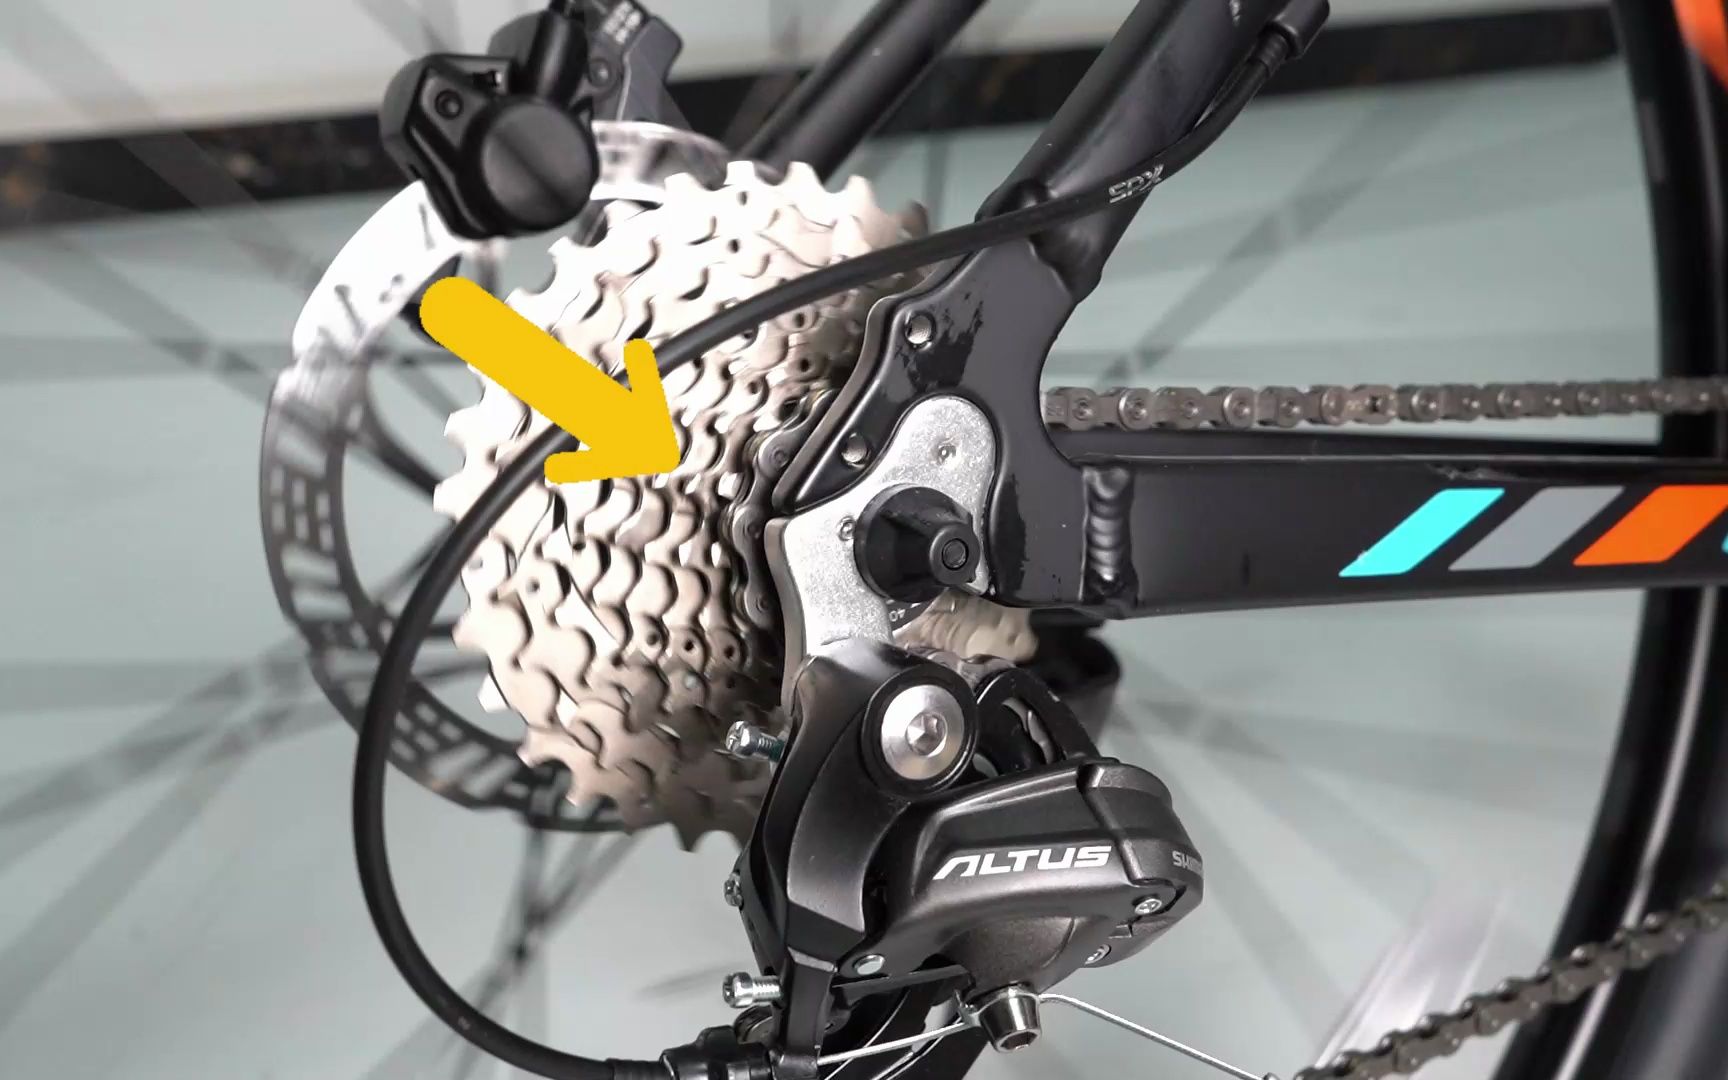 自行车变速器安装过程图片